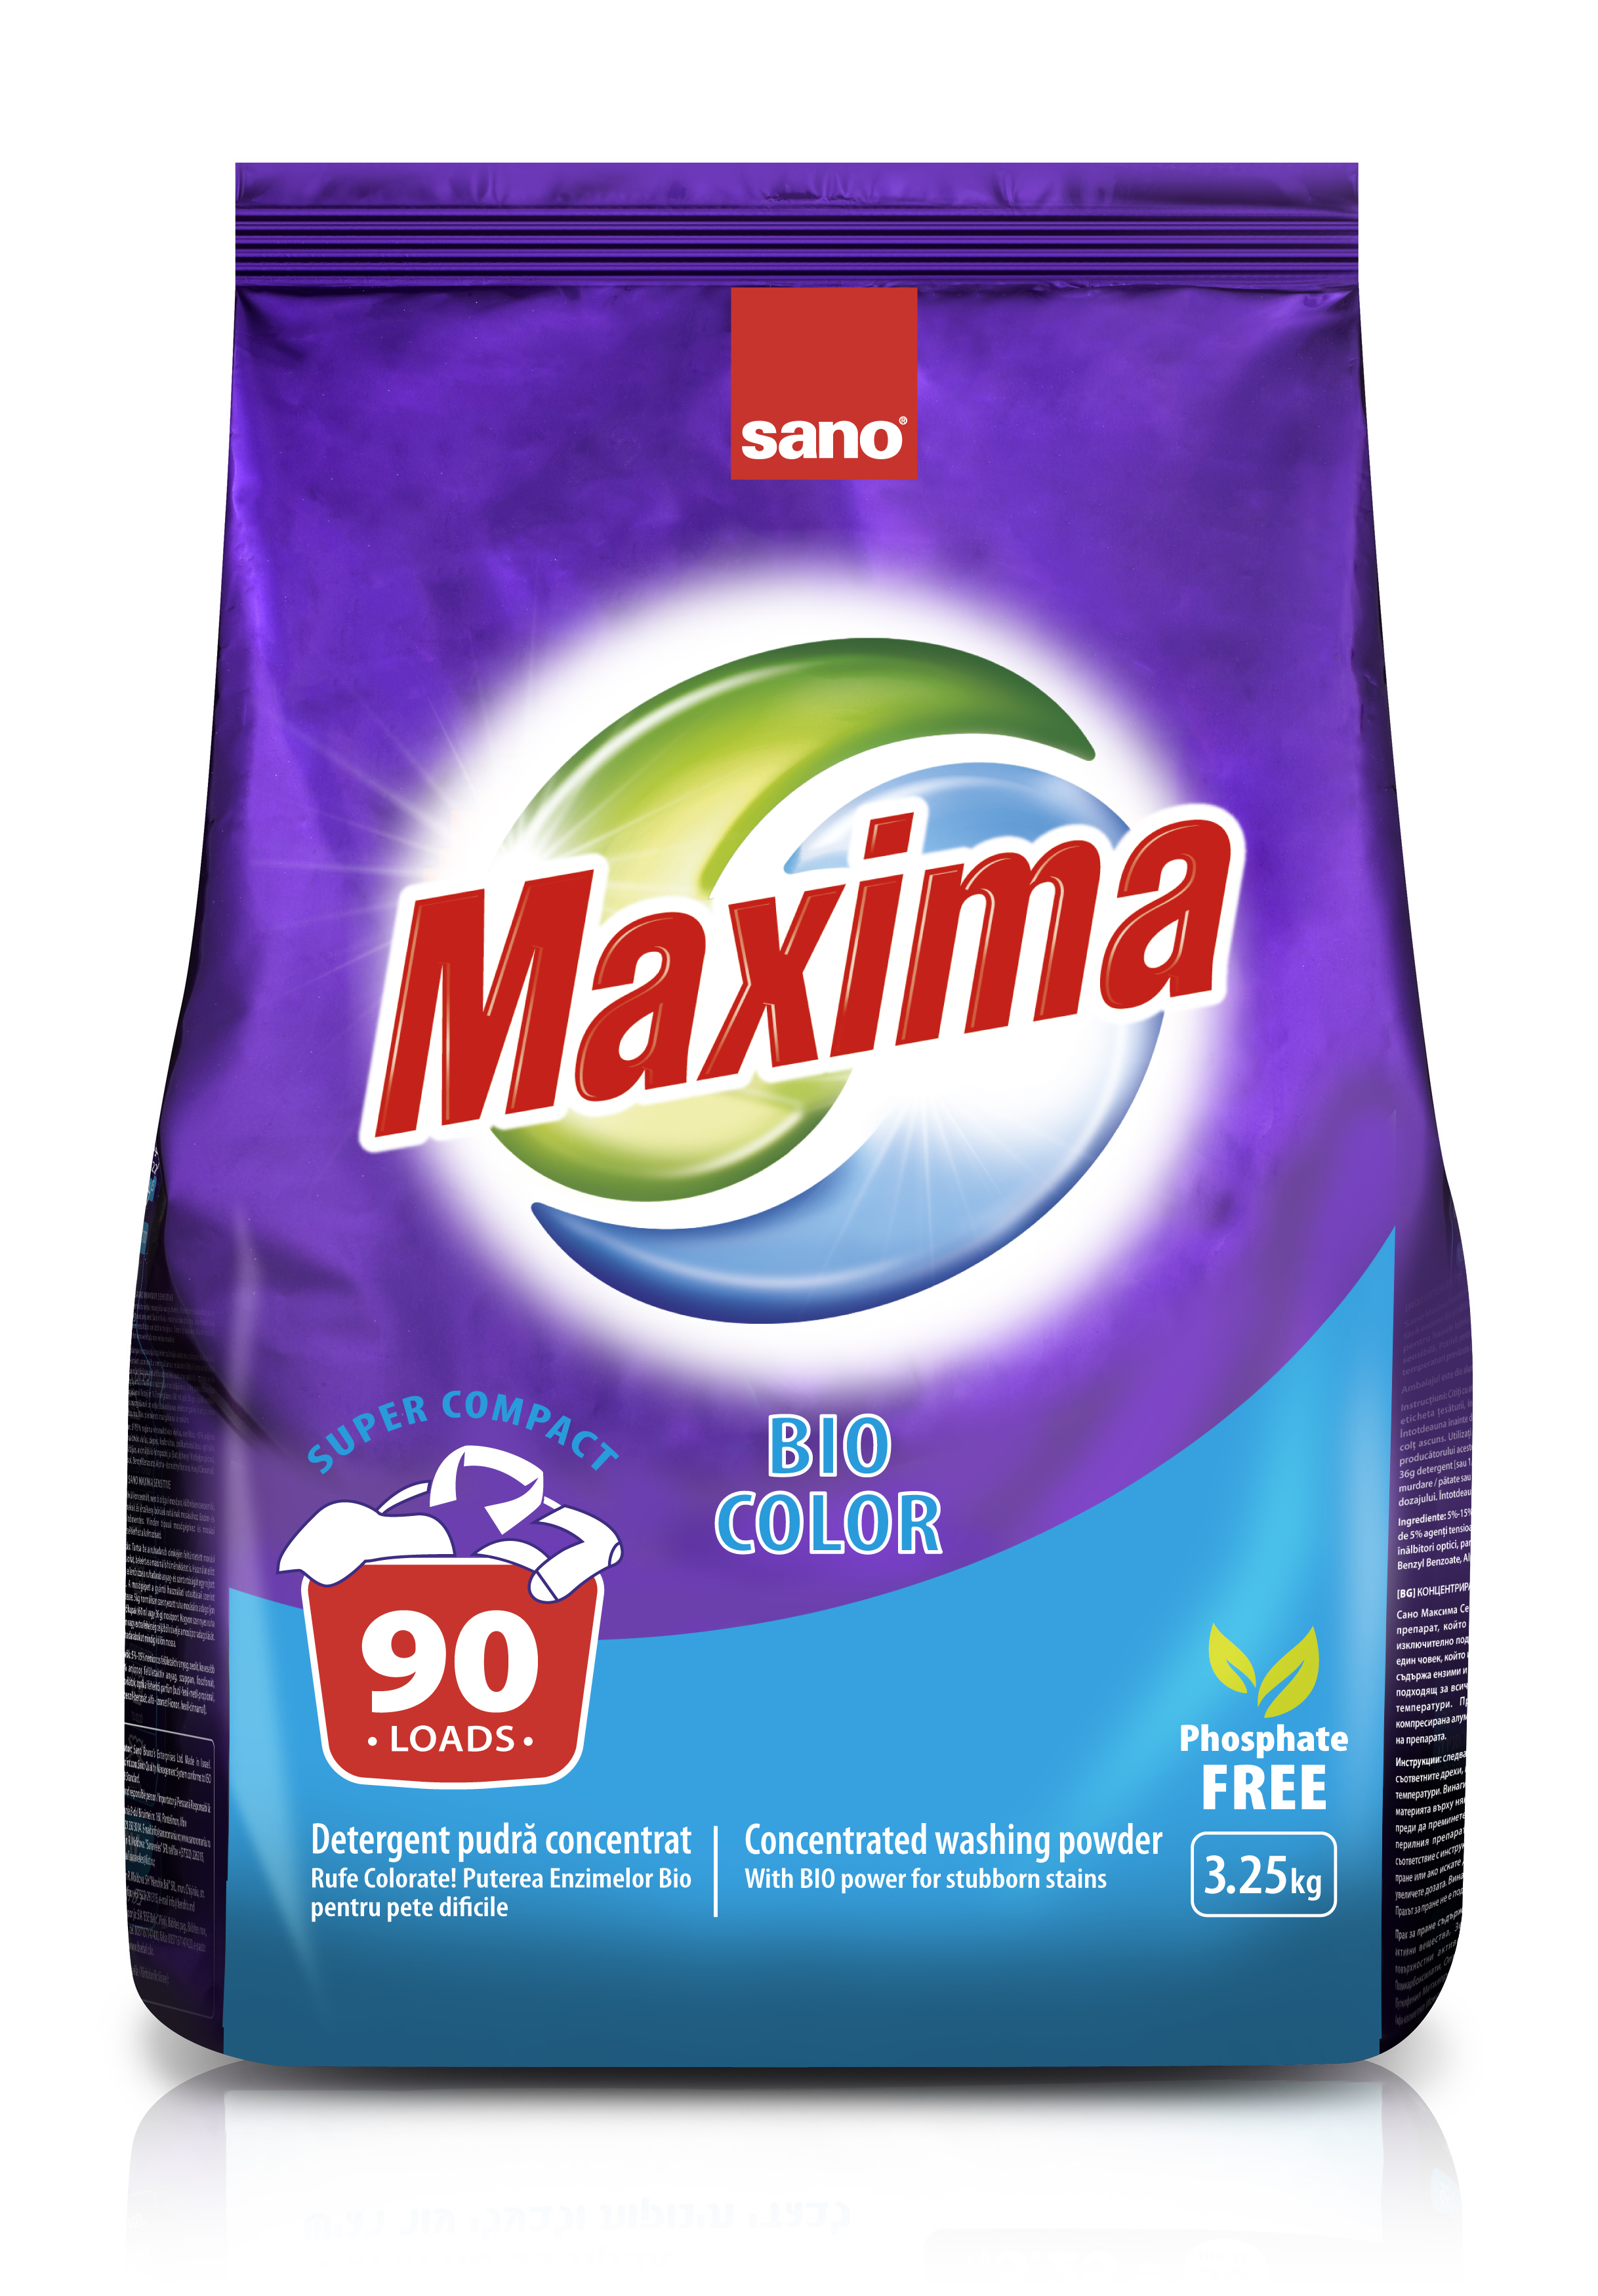 Sano Maxima стиральный порошок Bio Color 3.25 кг. #7290102991204